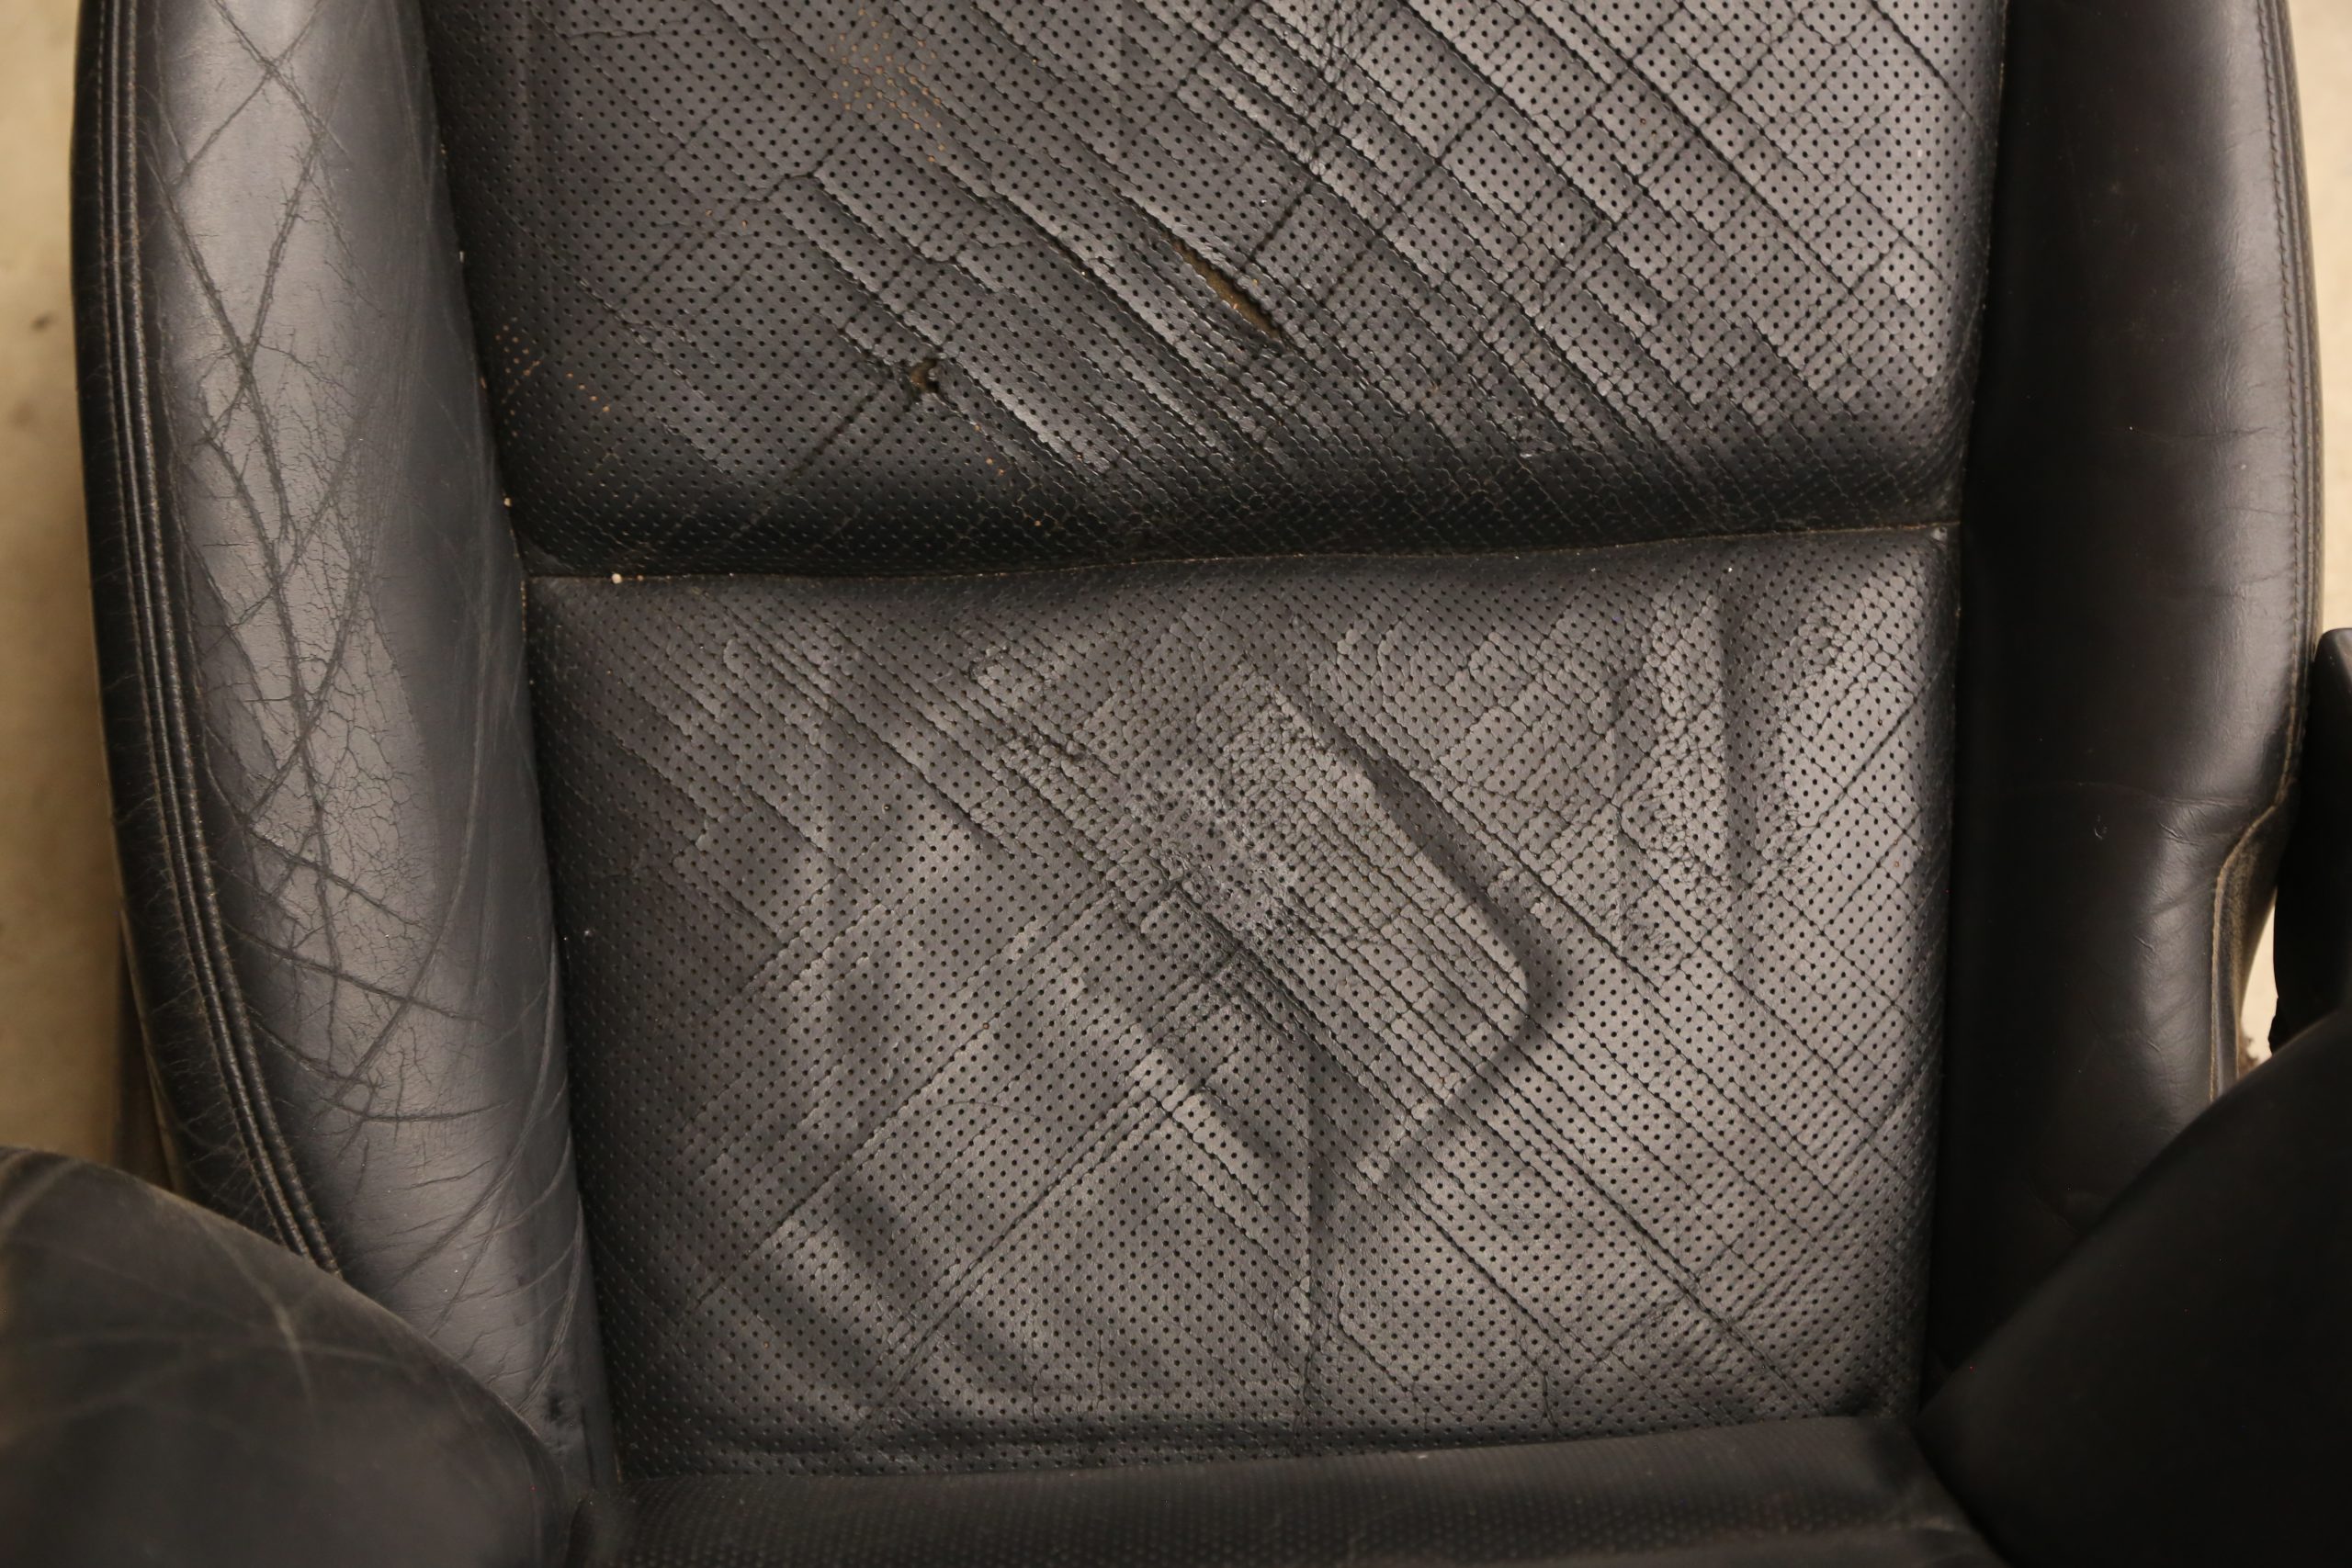 Permatex Leather Repair 